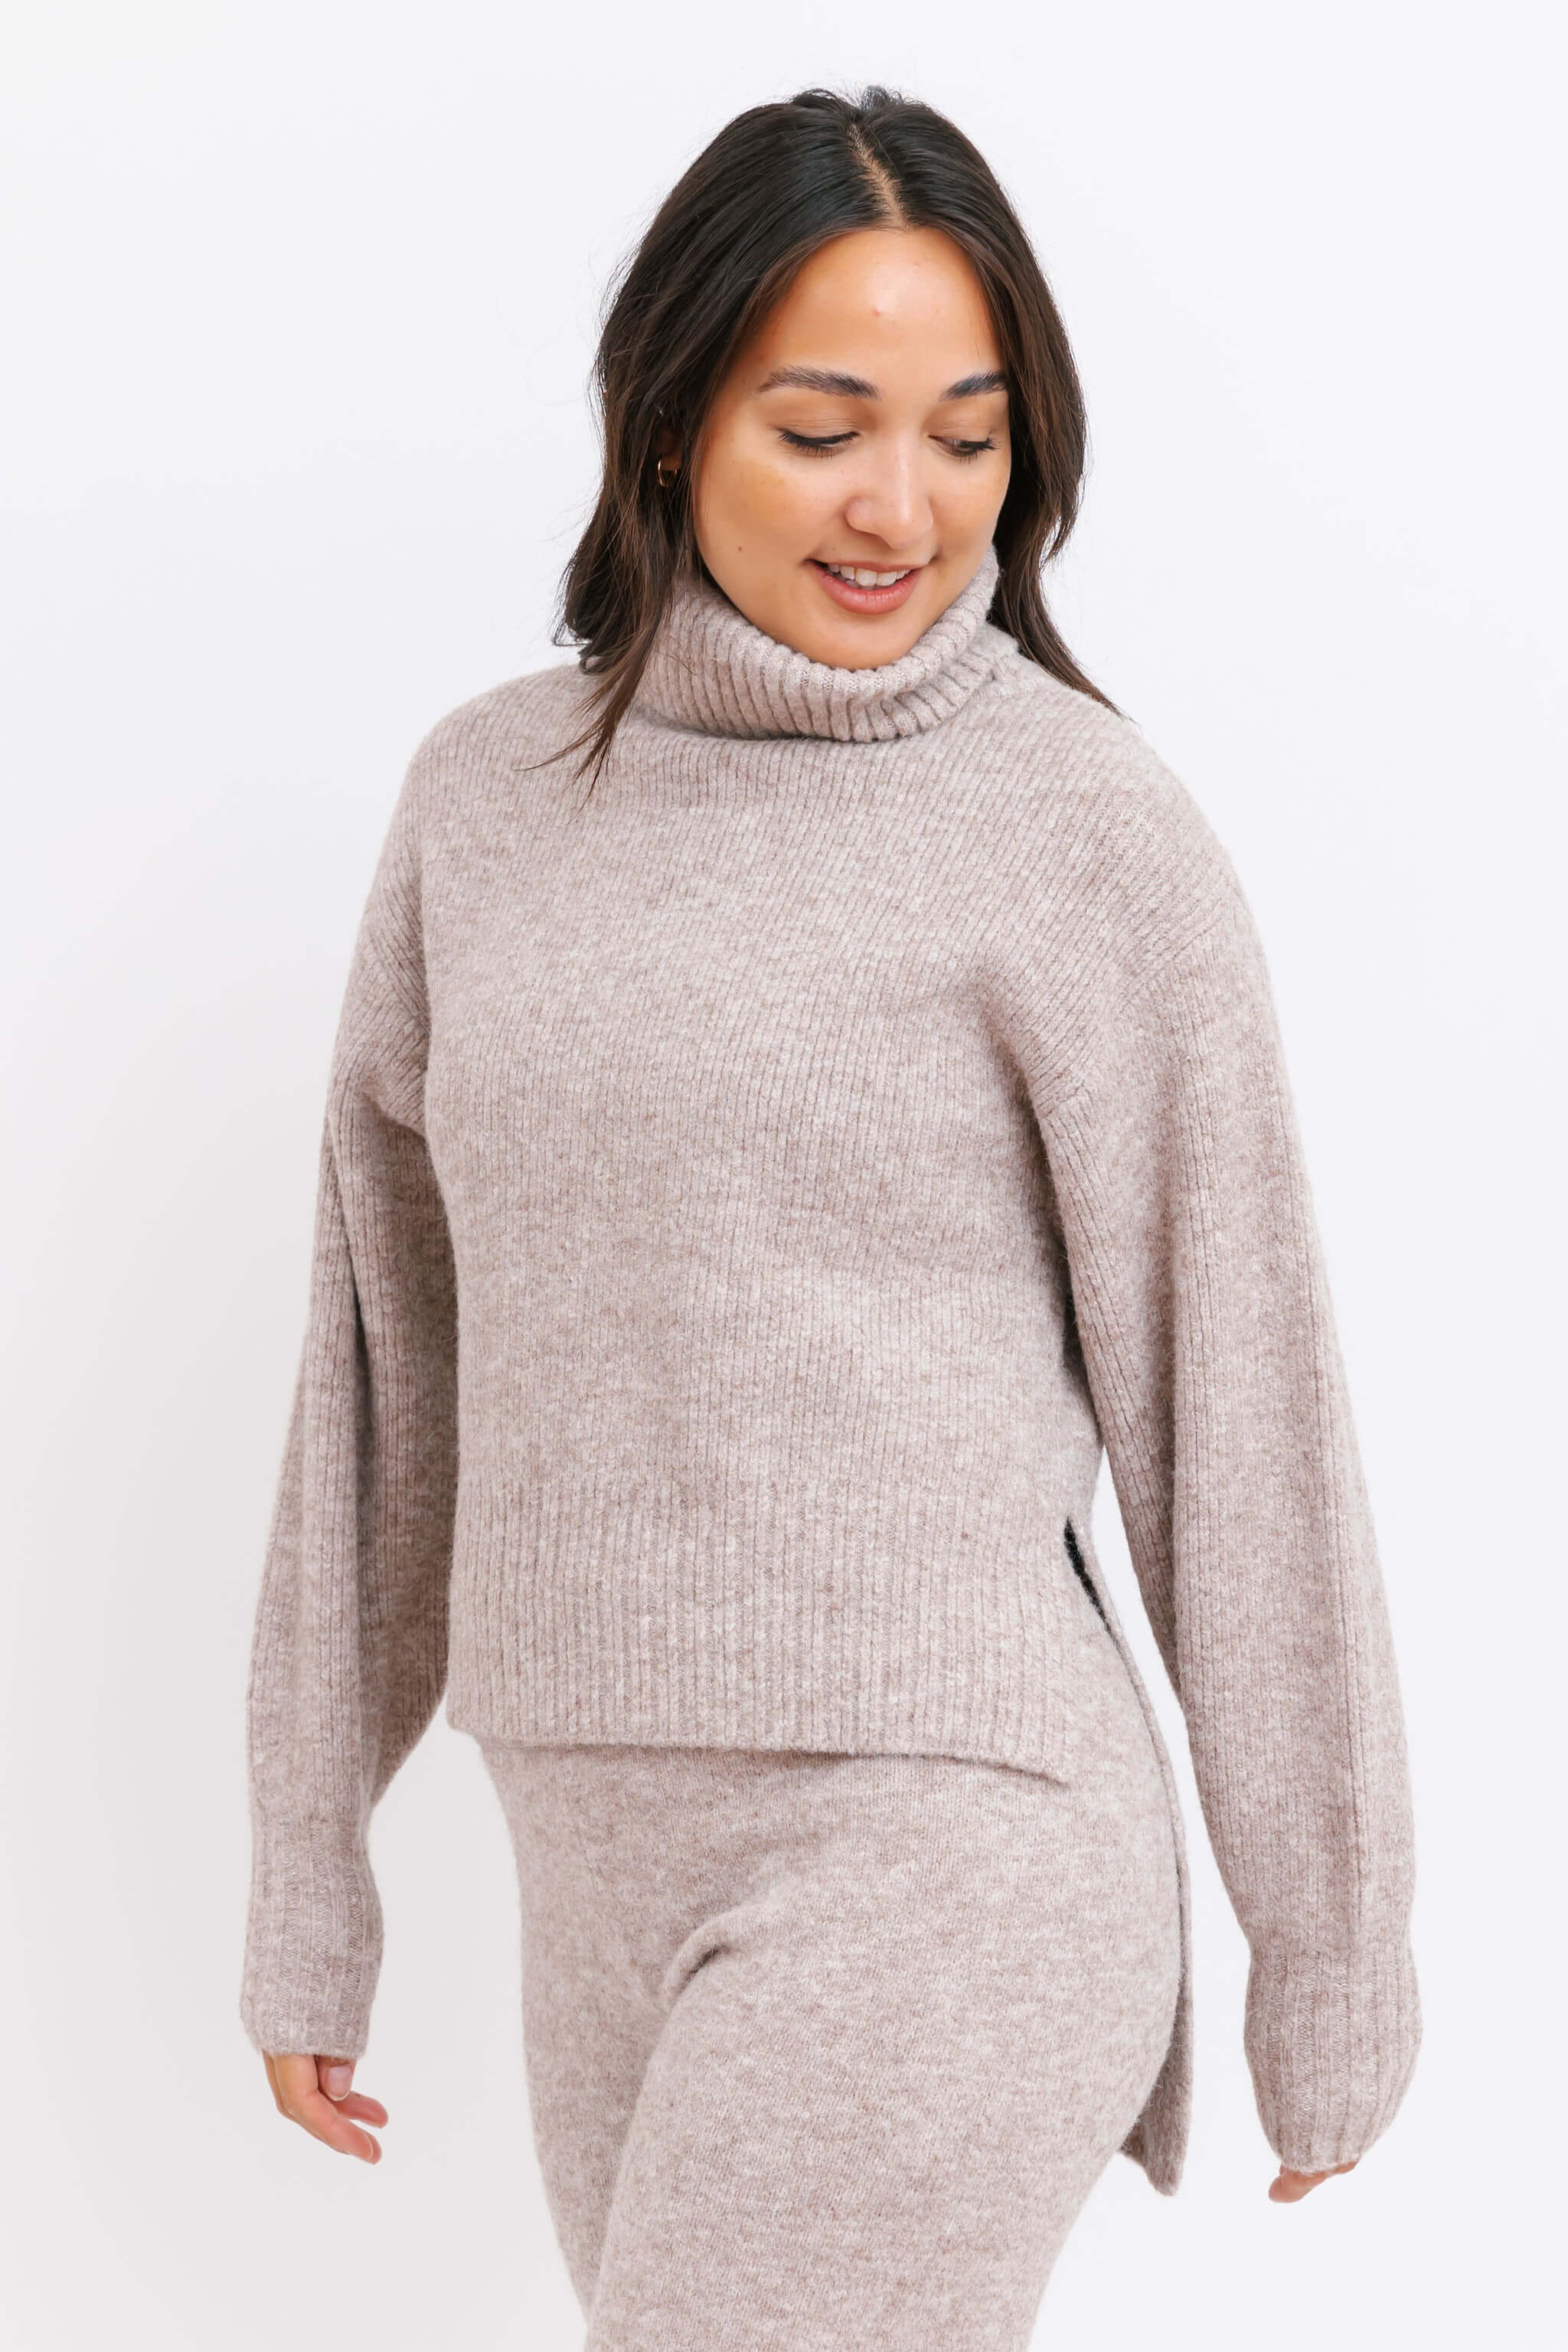 Smash + Tess Loren Turtleneck Sweater in Latte